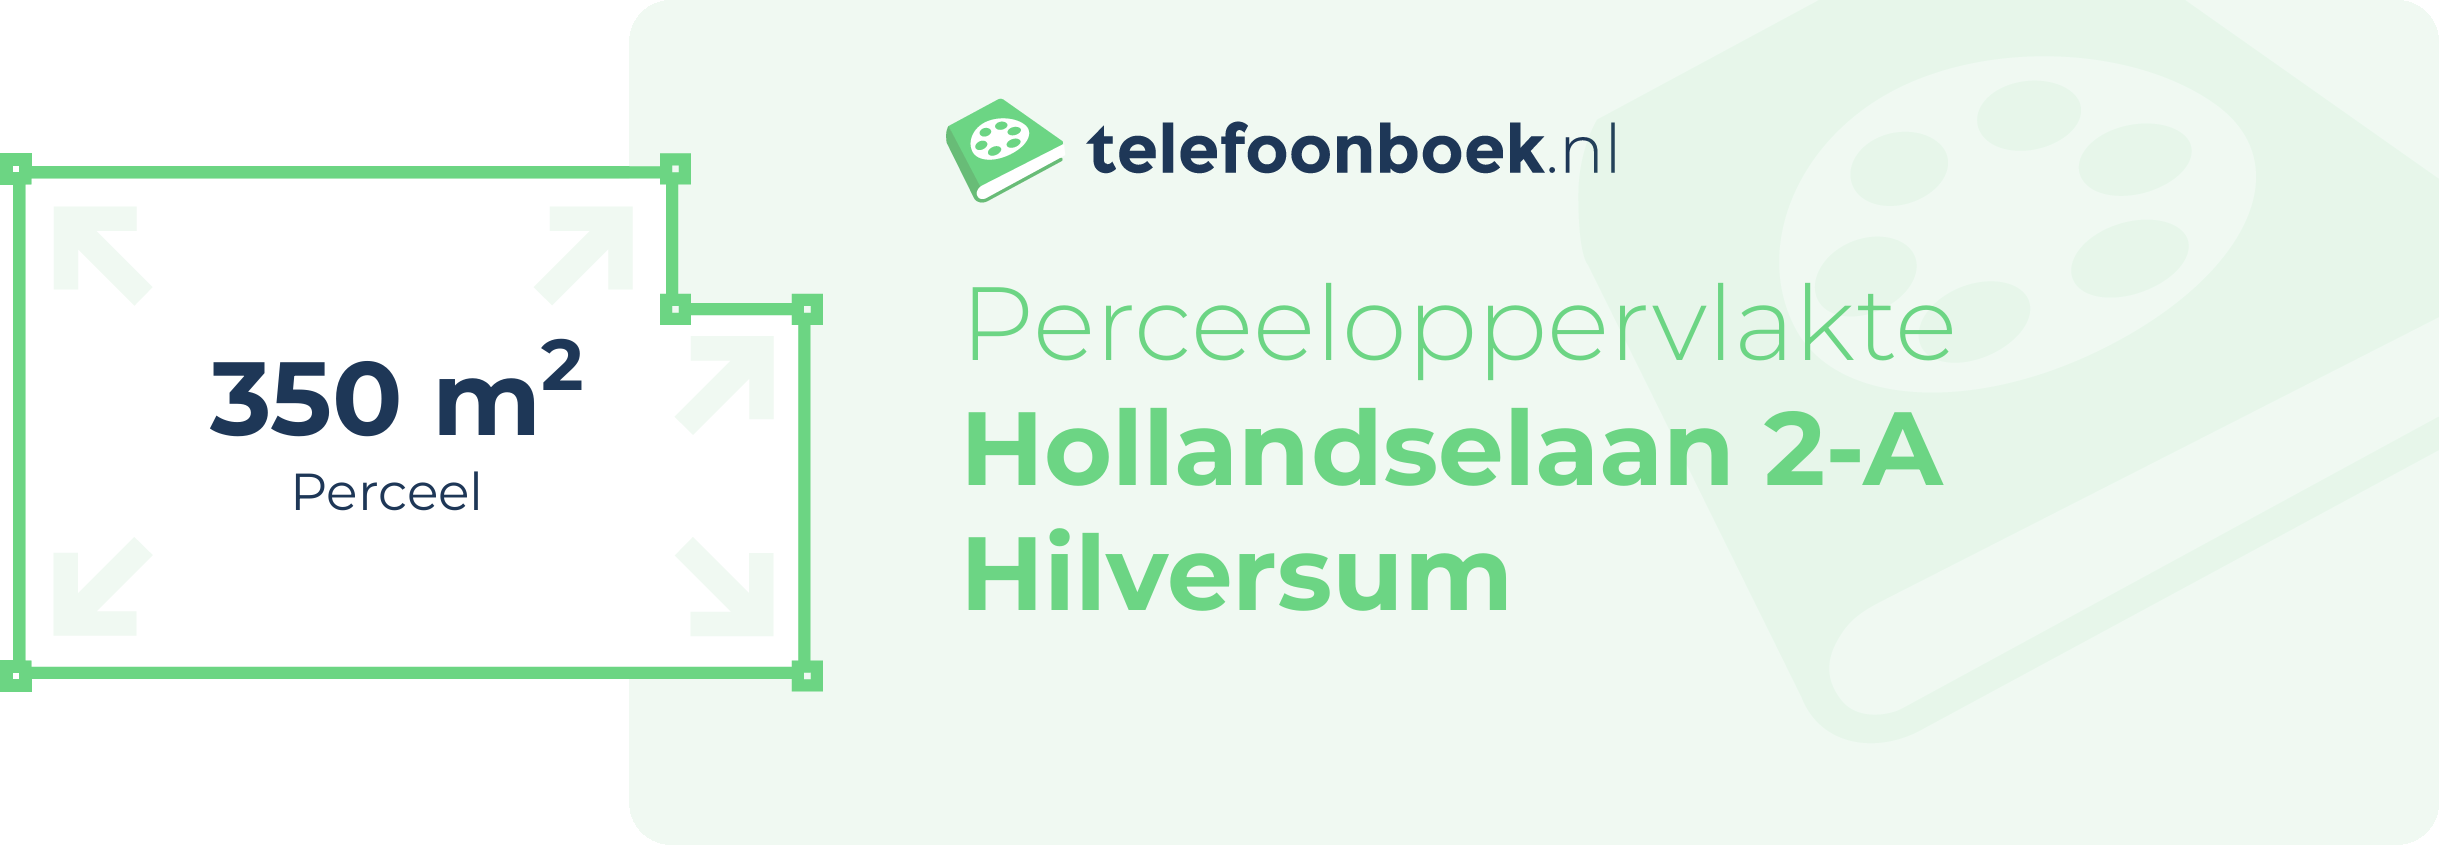 Perceeloppervlakte Hollandselaan 2-A Hilversum